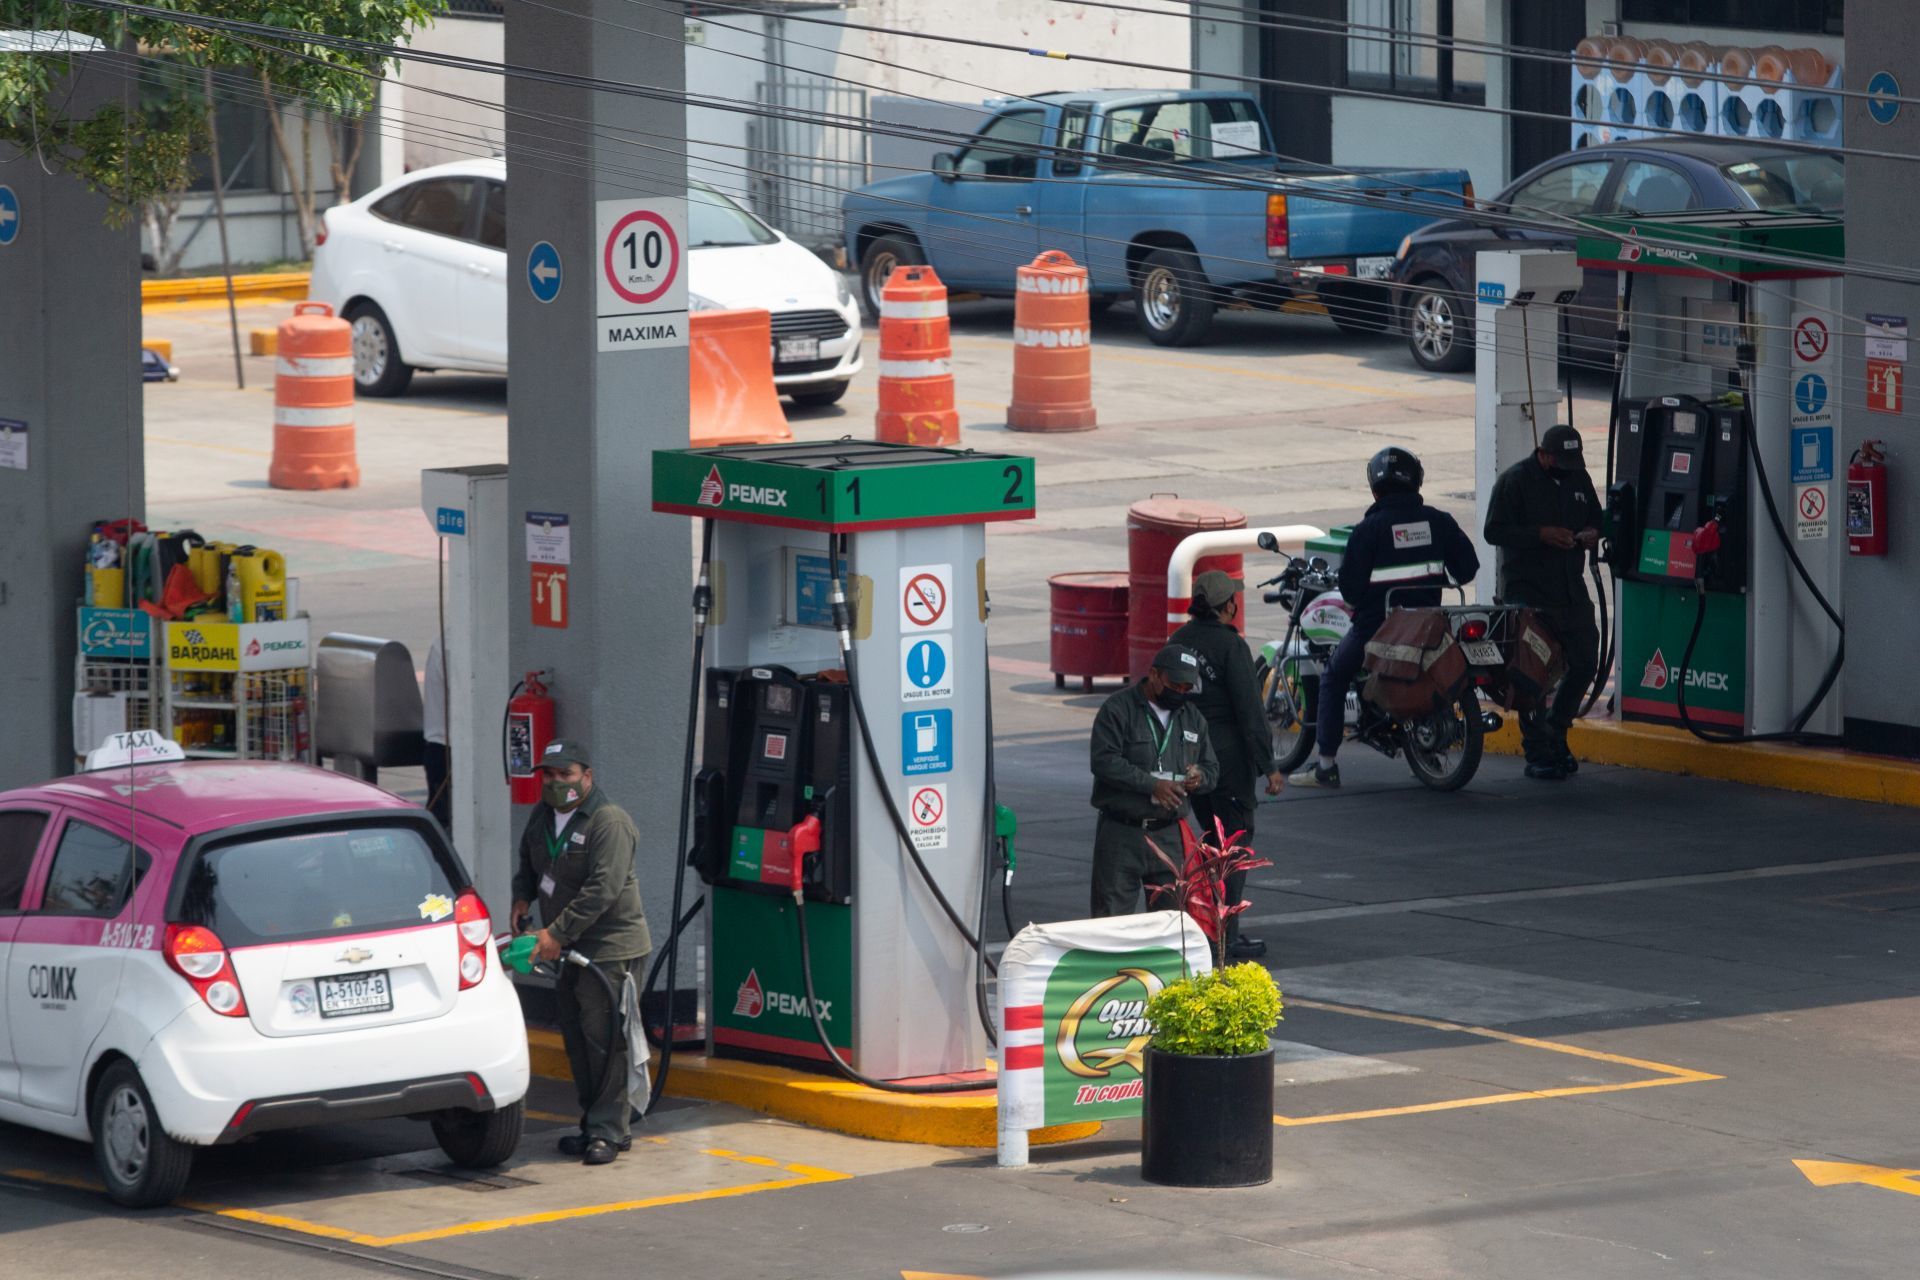 Trabajadores de la gasolinera Pemex suministran de gasolina a autos y motocicletas que solicitan el servicio